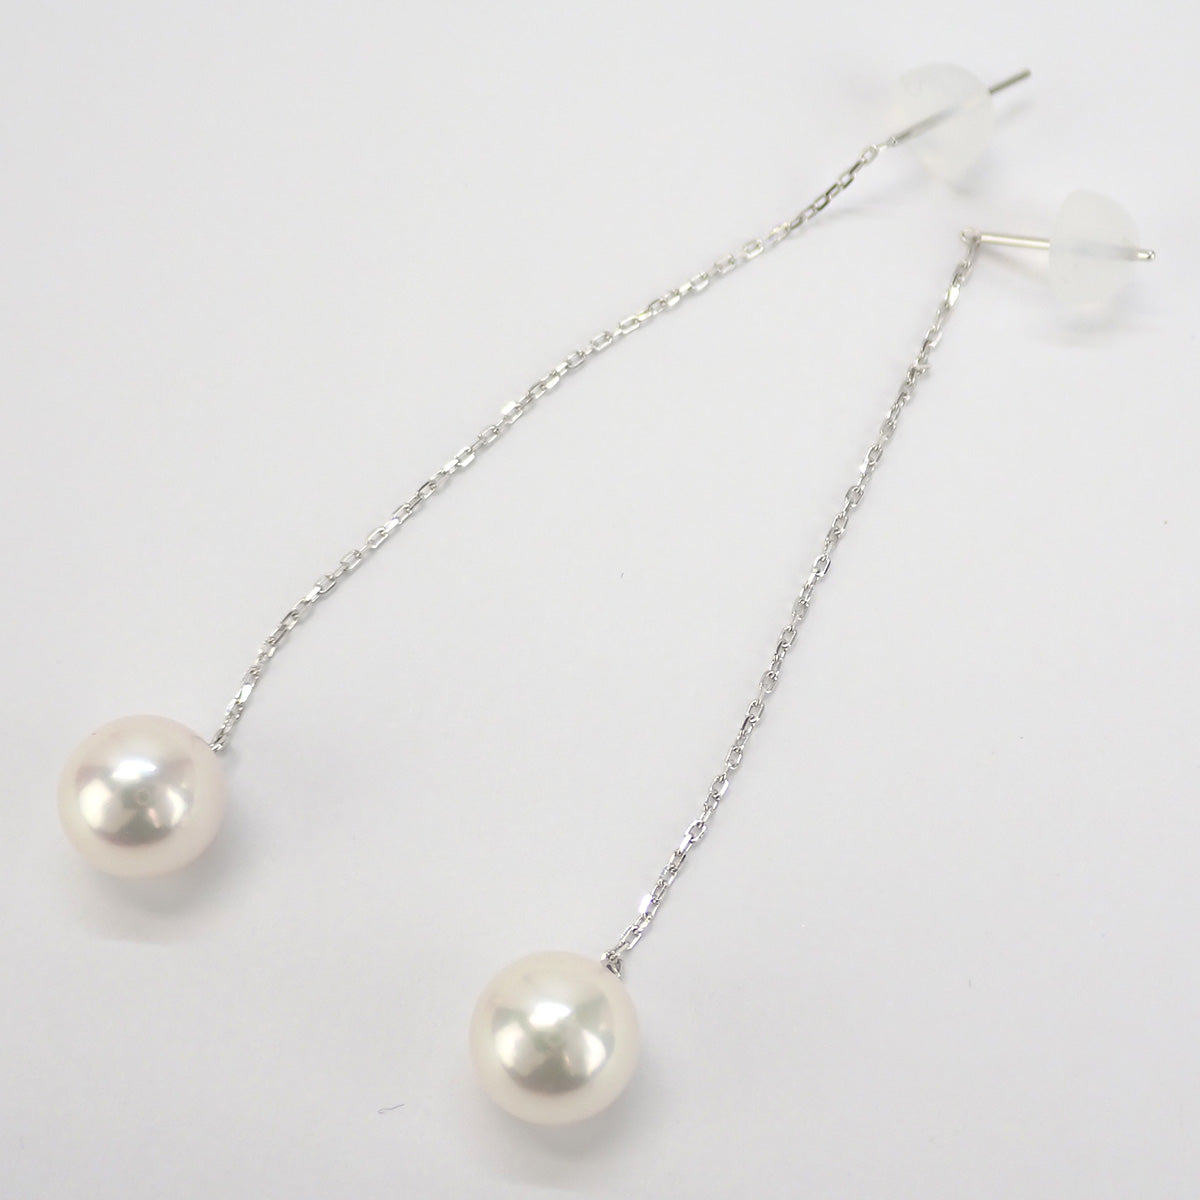 K18 White Gold & Akoya Pearl Earrings, 7.5mm for Women - New & Unused